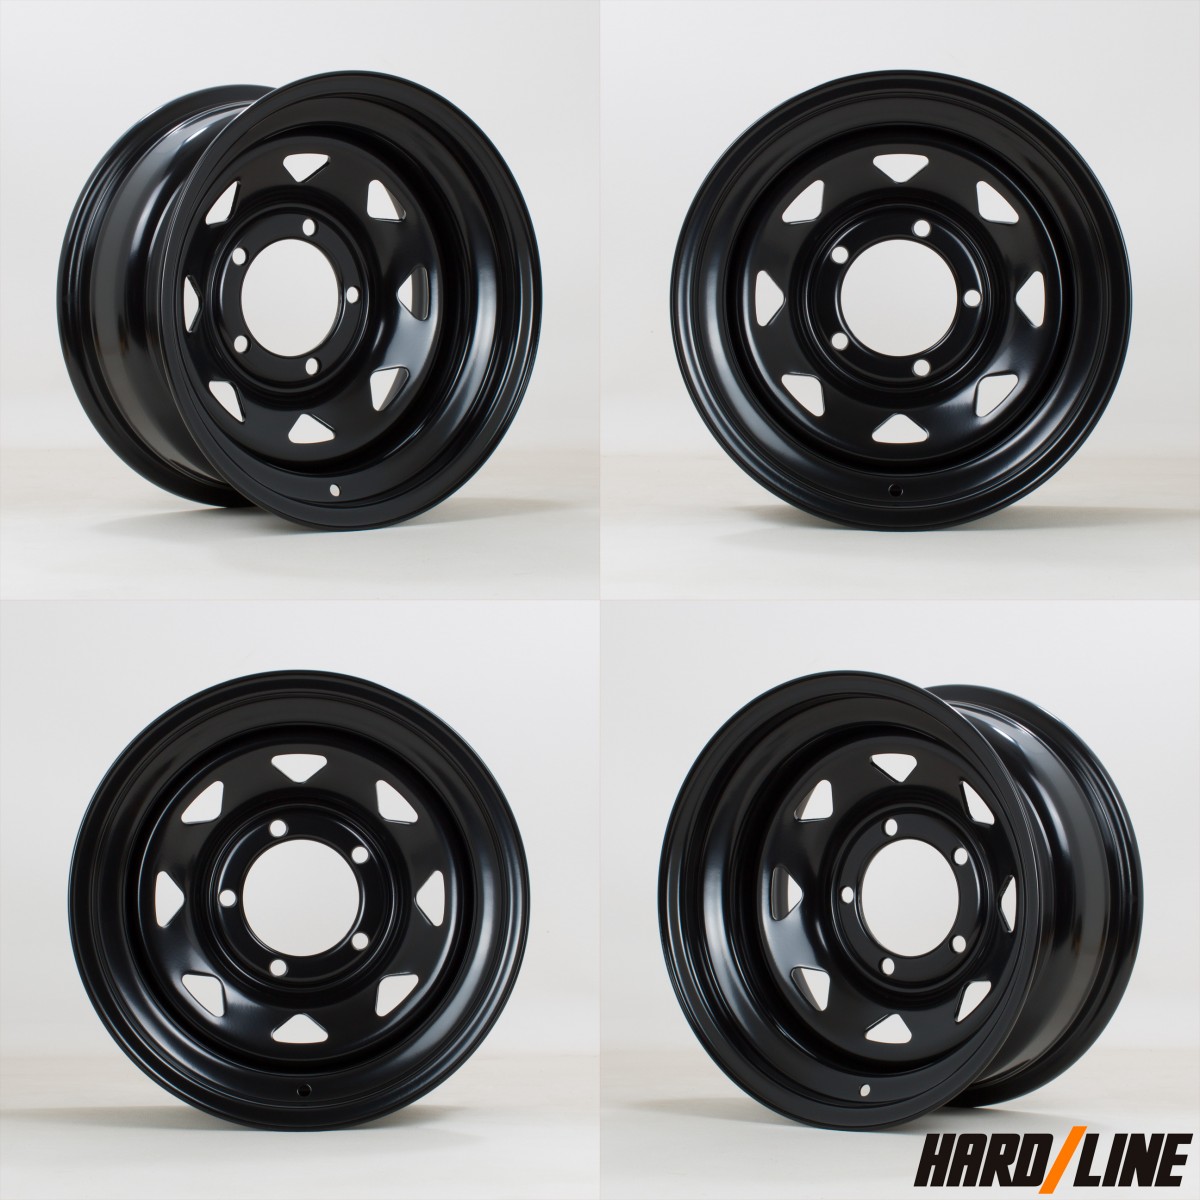 HARDLINE 8 Spoke Steel Wheels - 15x7.0, ET-30, 5x139.7 - Gloss Black - Set of 4